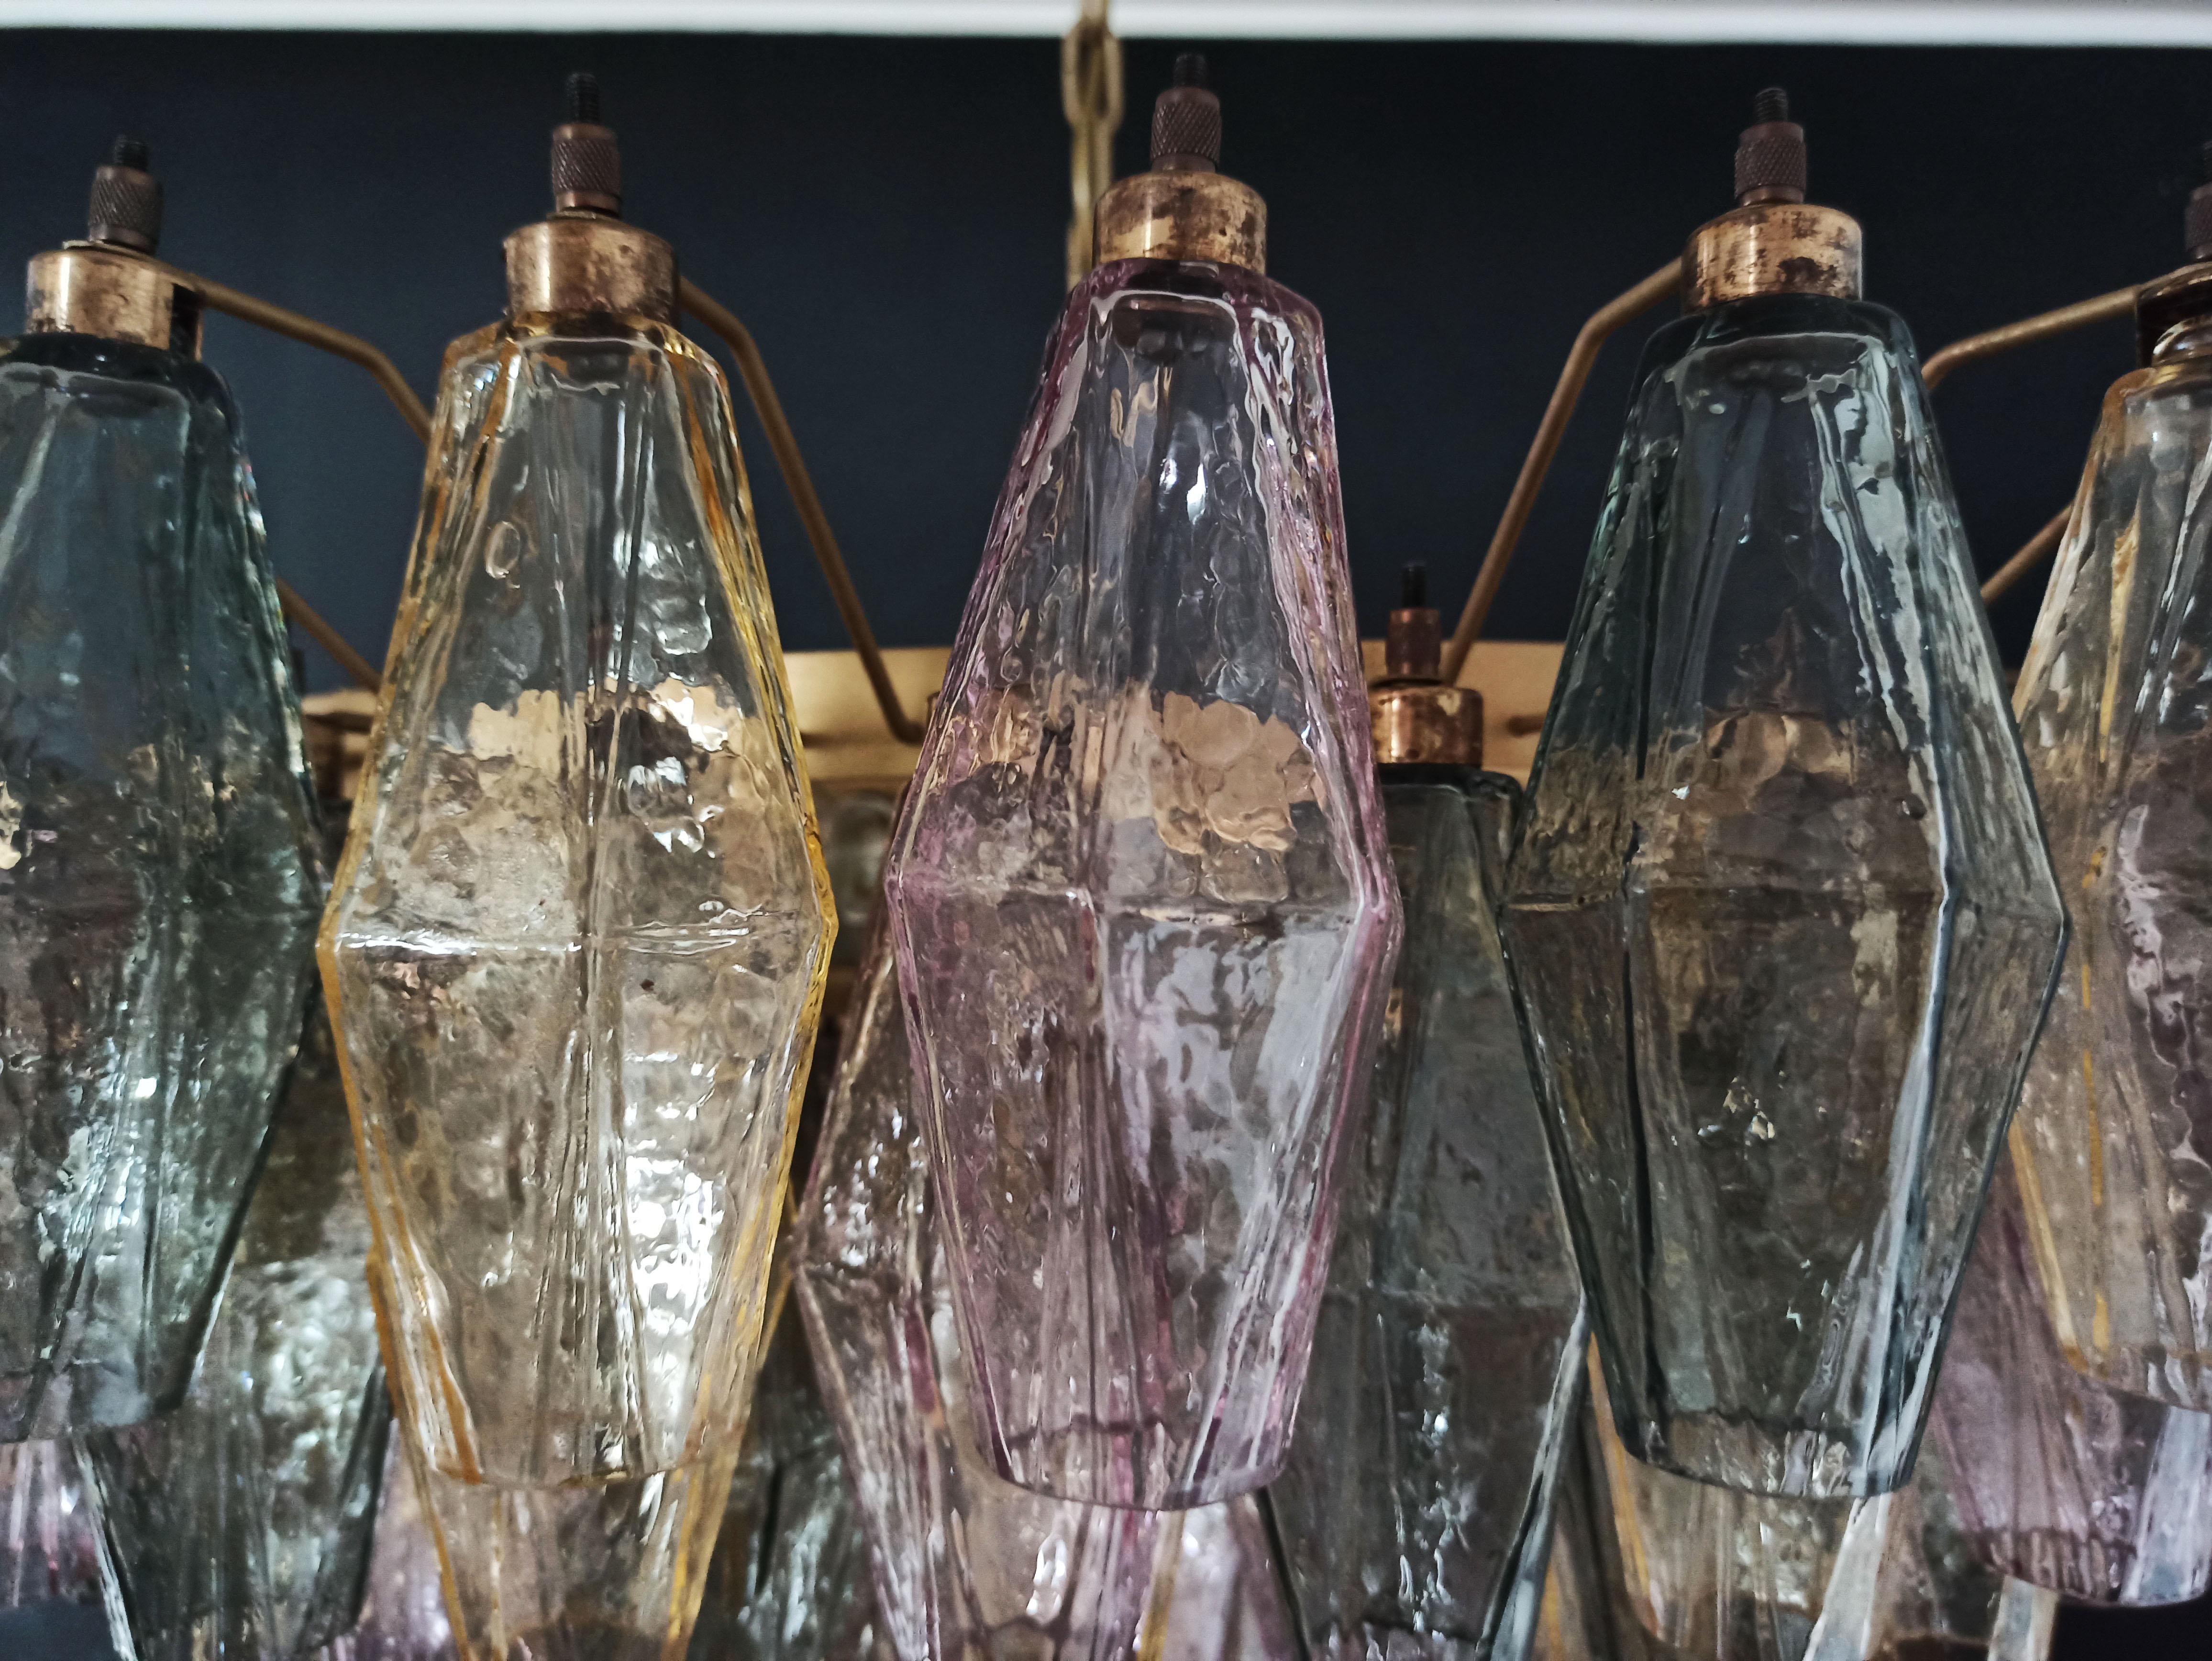 Incroyable candelier en verre de Murano - 185 verres multicolores 5